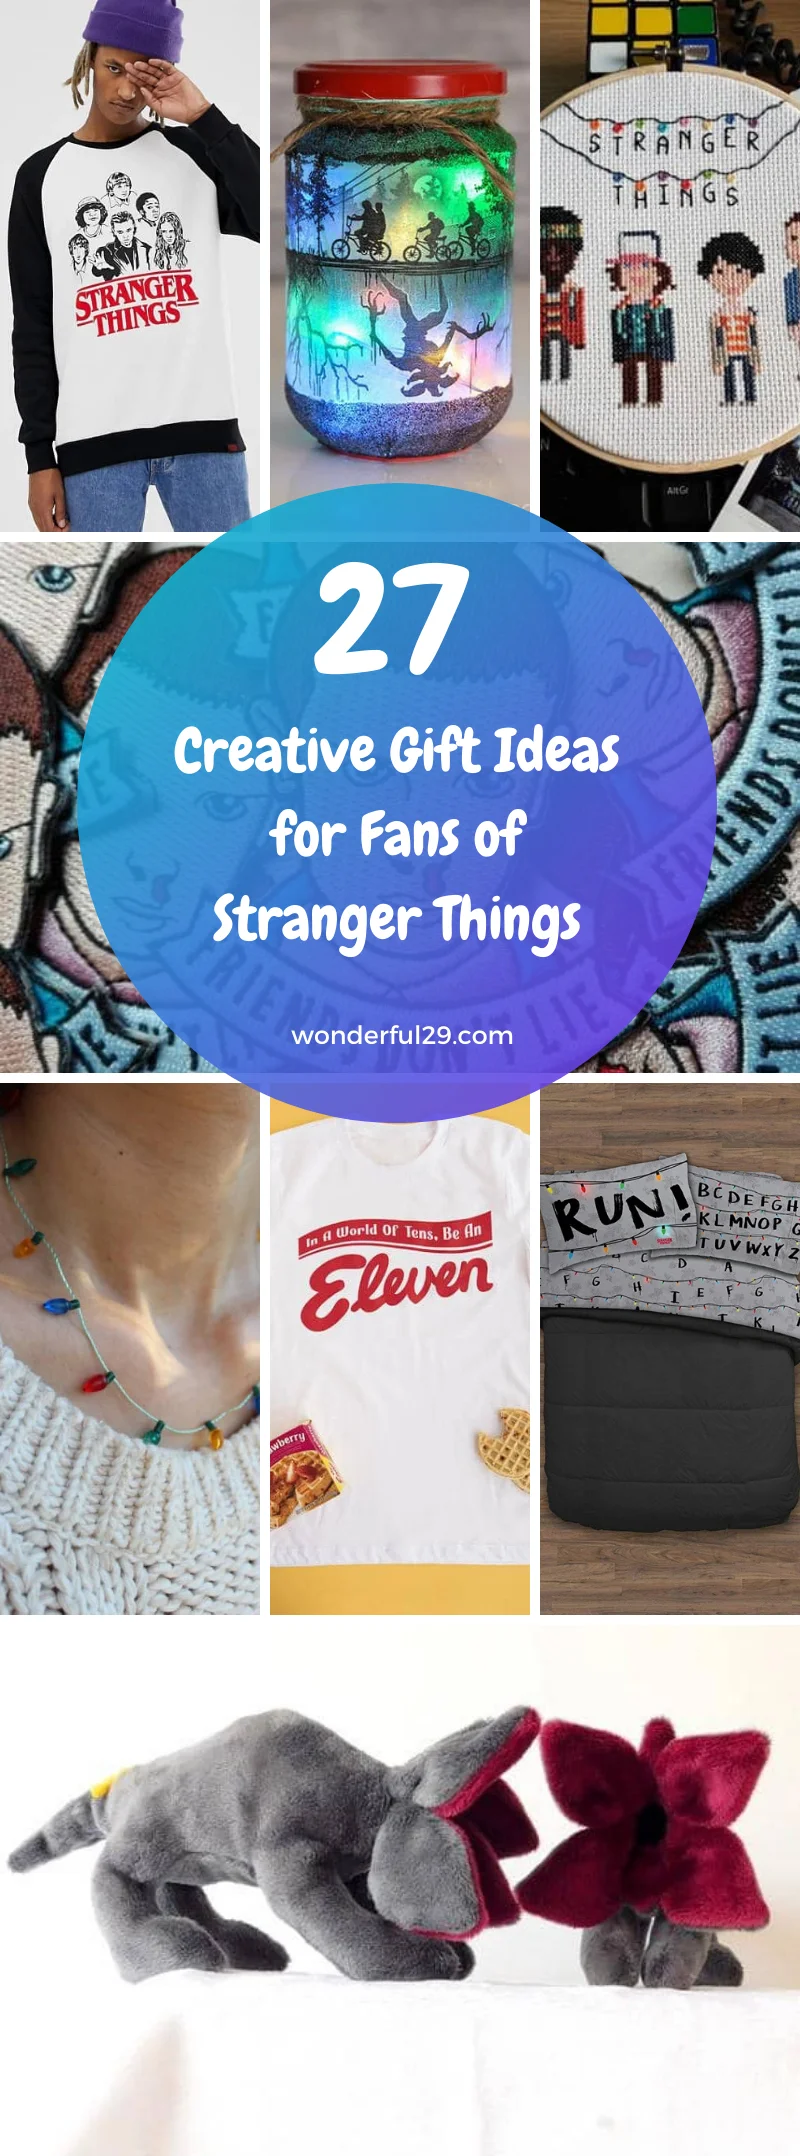 https://www.wonderful29.com/img/2020/02/stranger-things-gift-ideas-w29-pinterest-share.jpg.webp